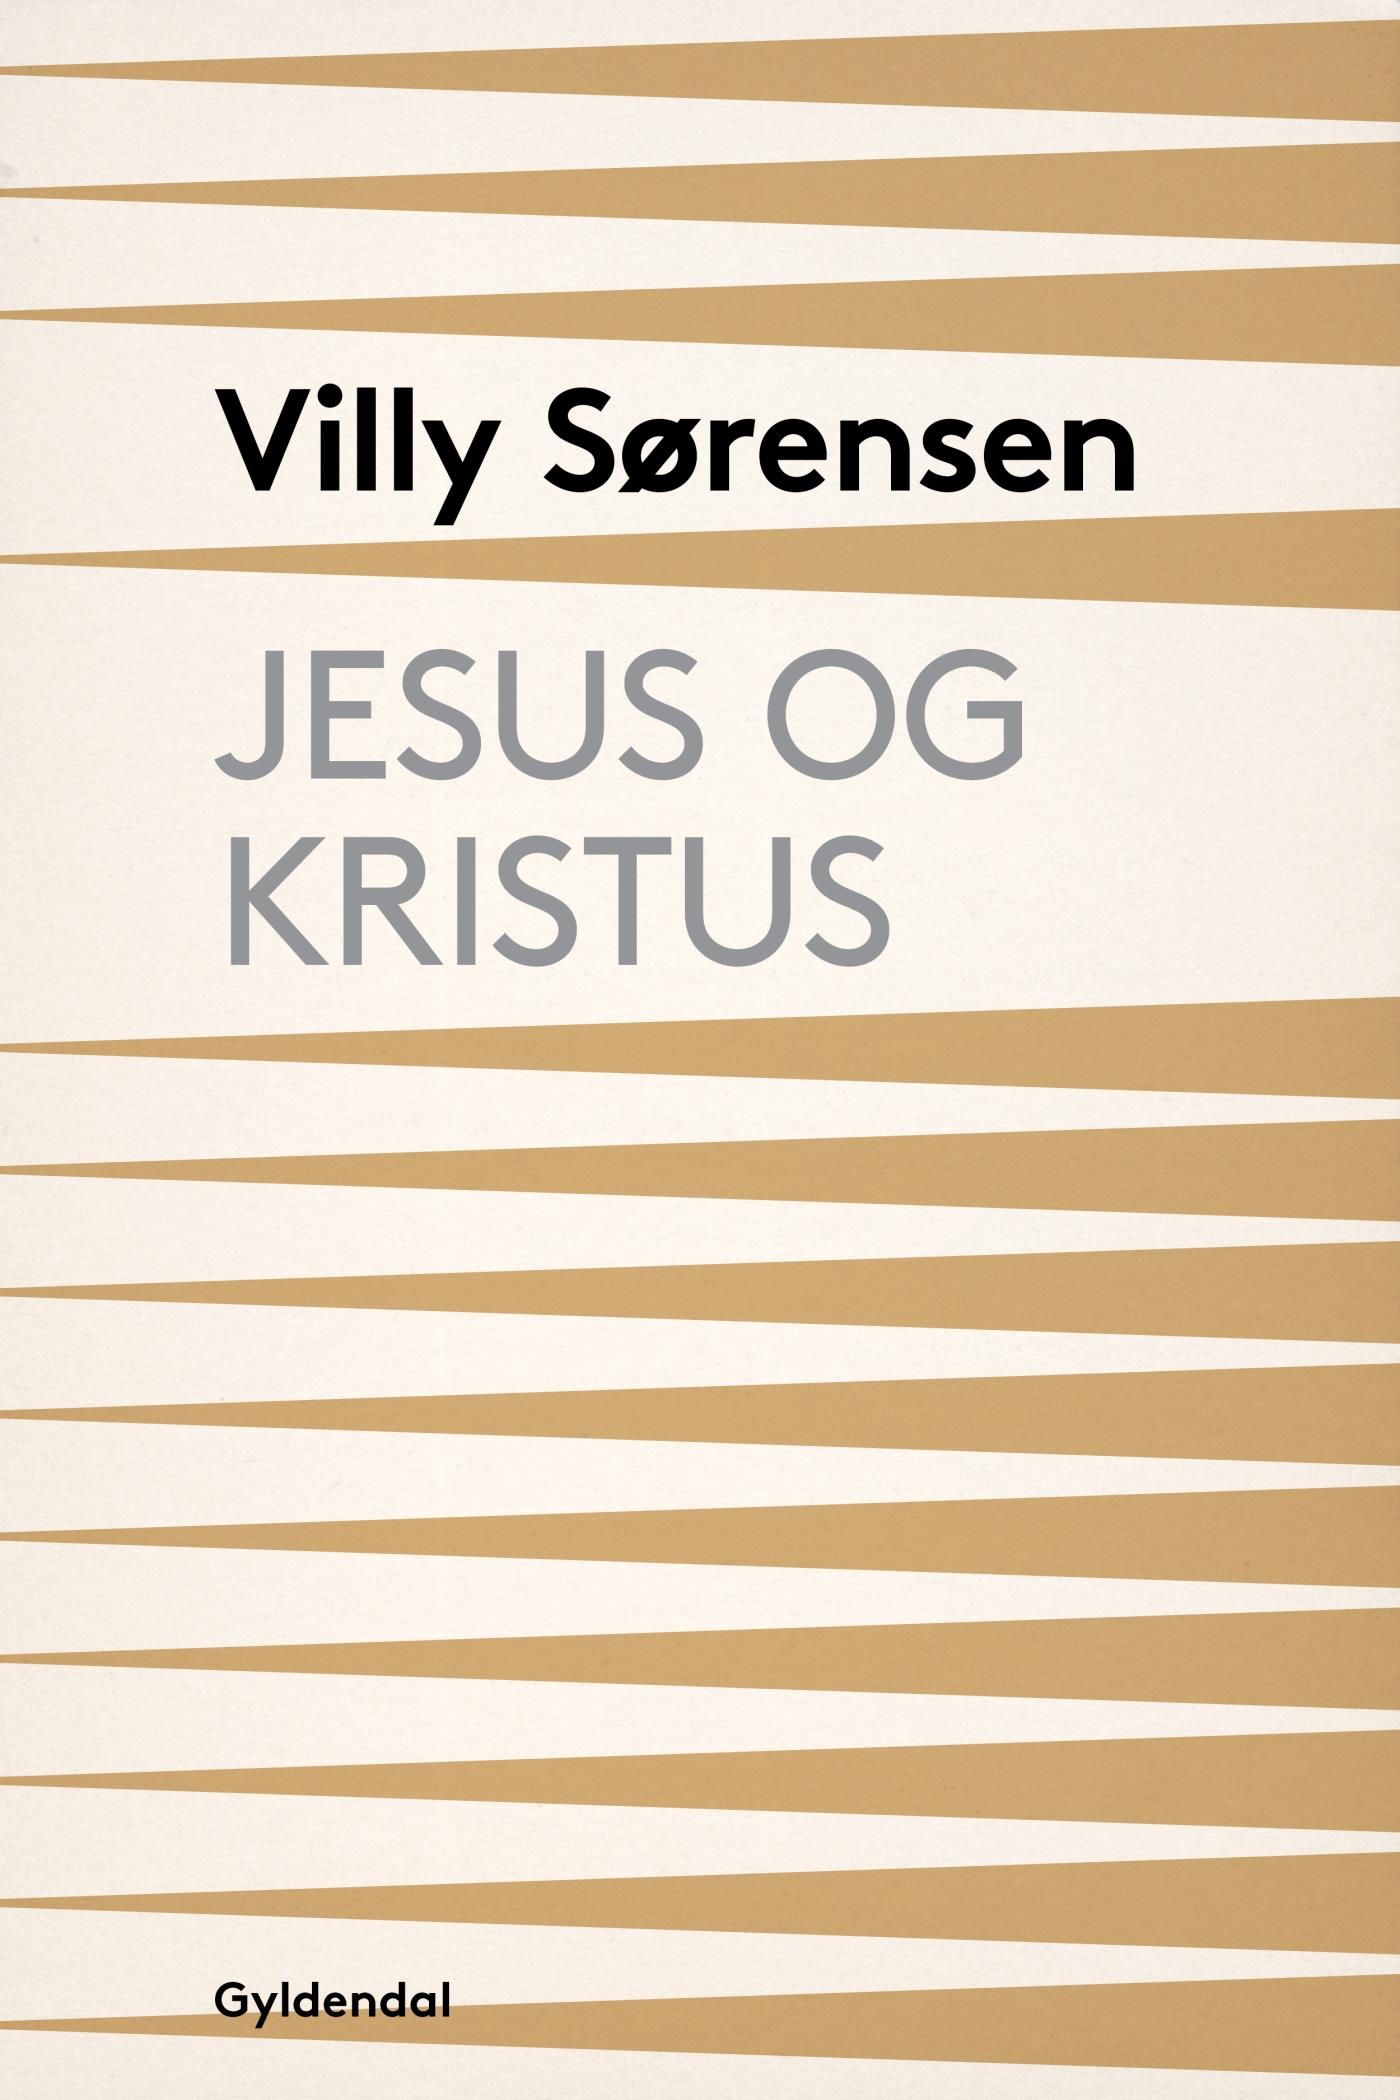 Jesus og Kristus, eBook by Villy Sørensen